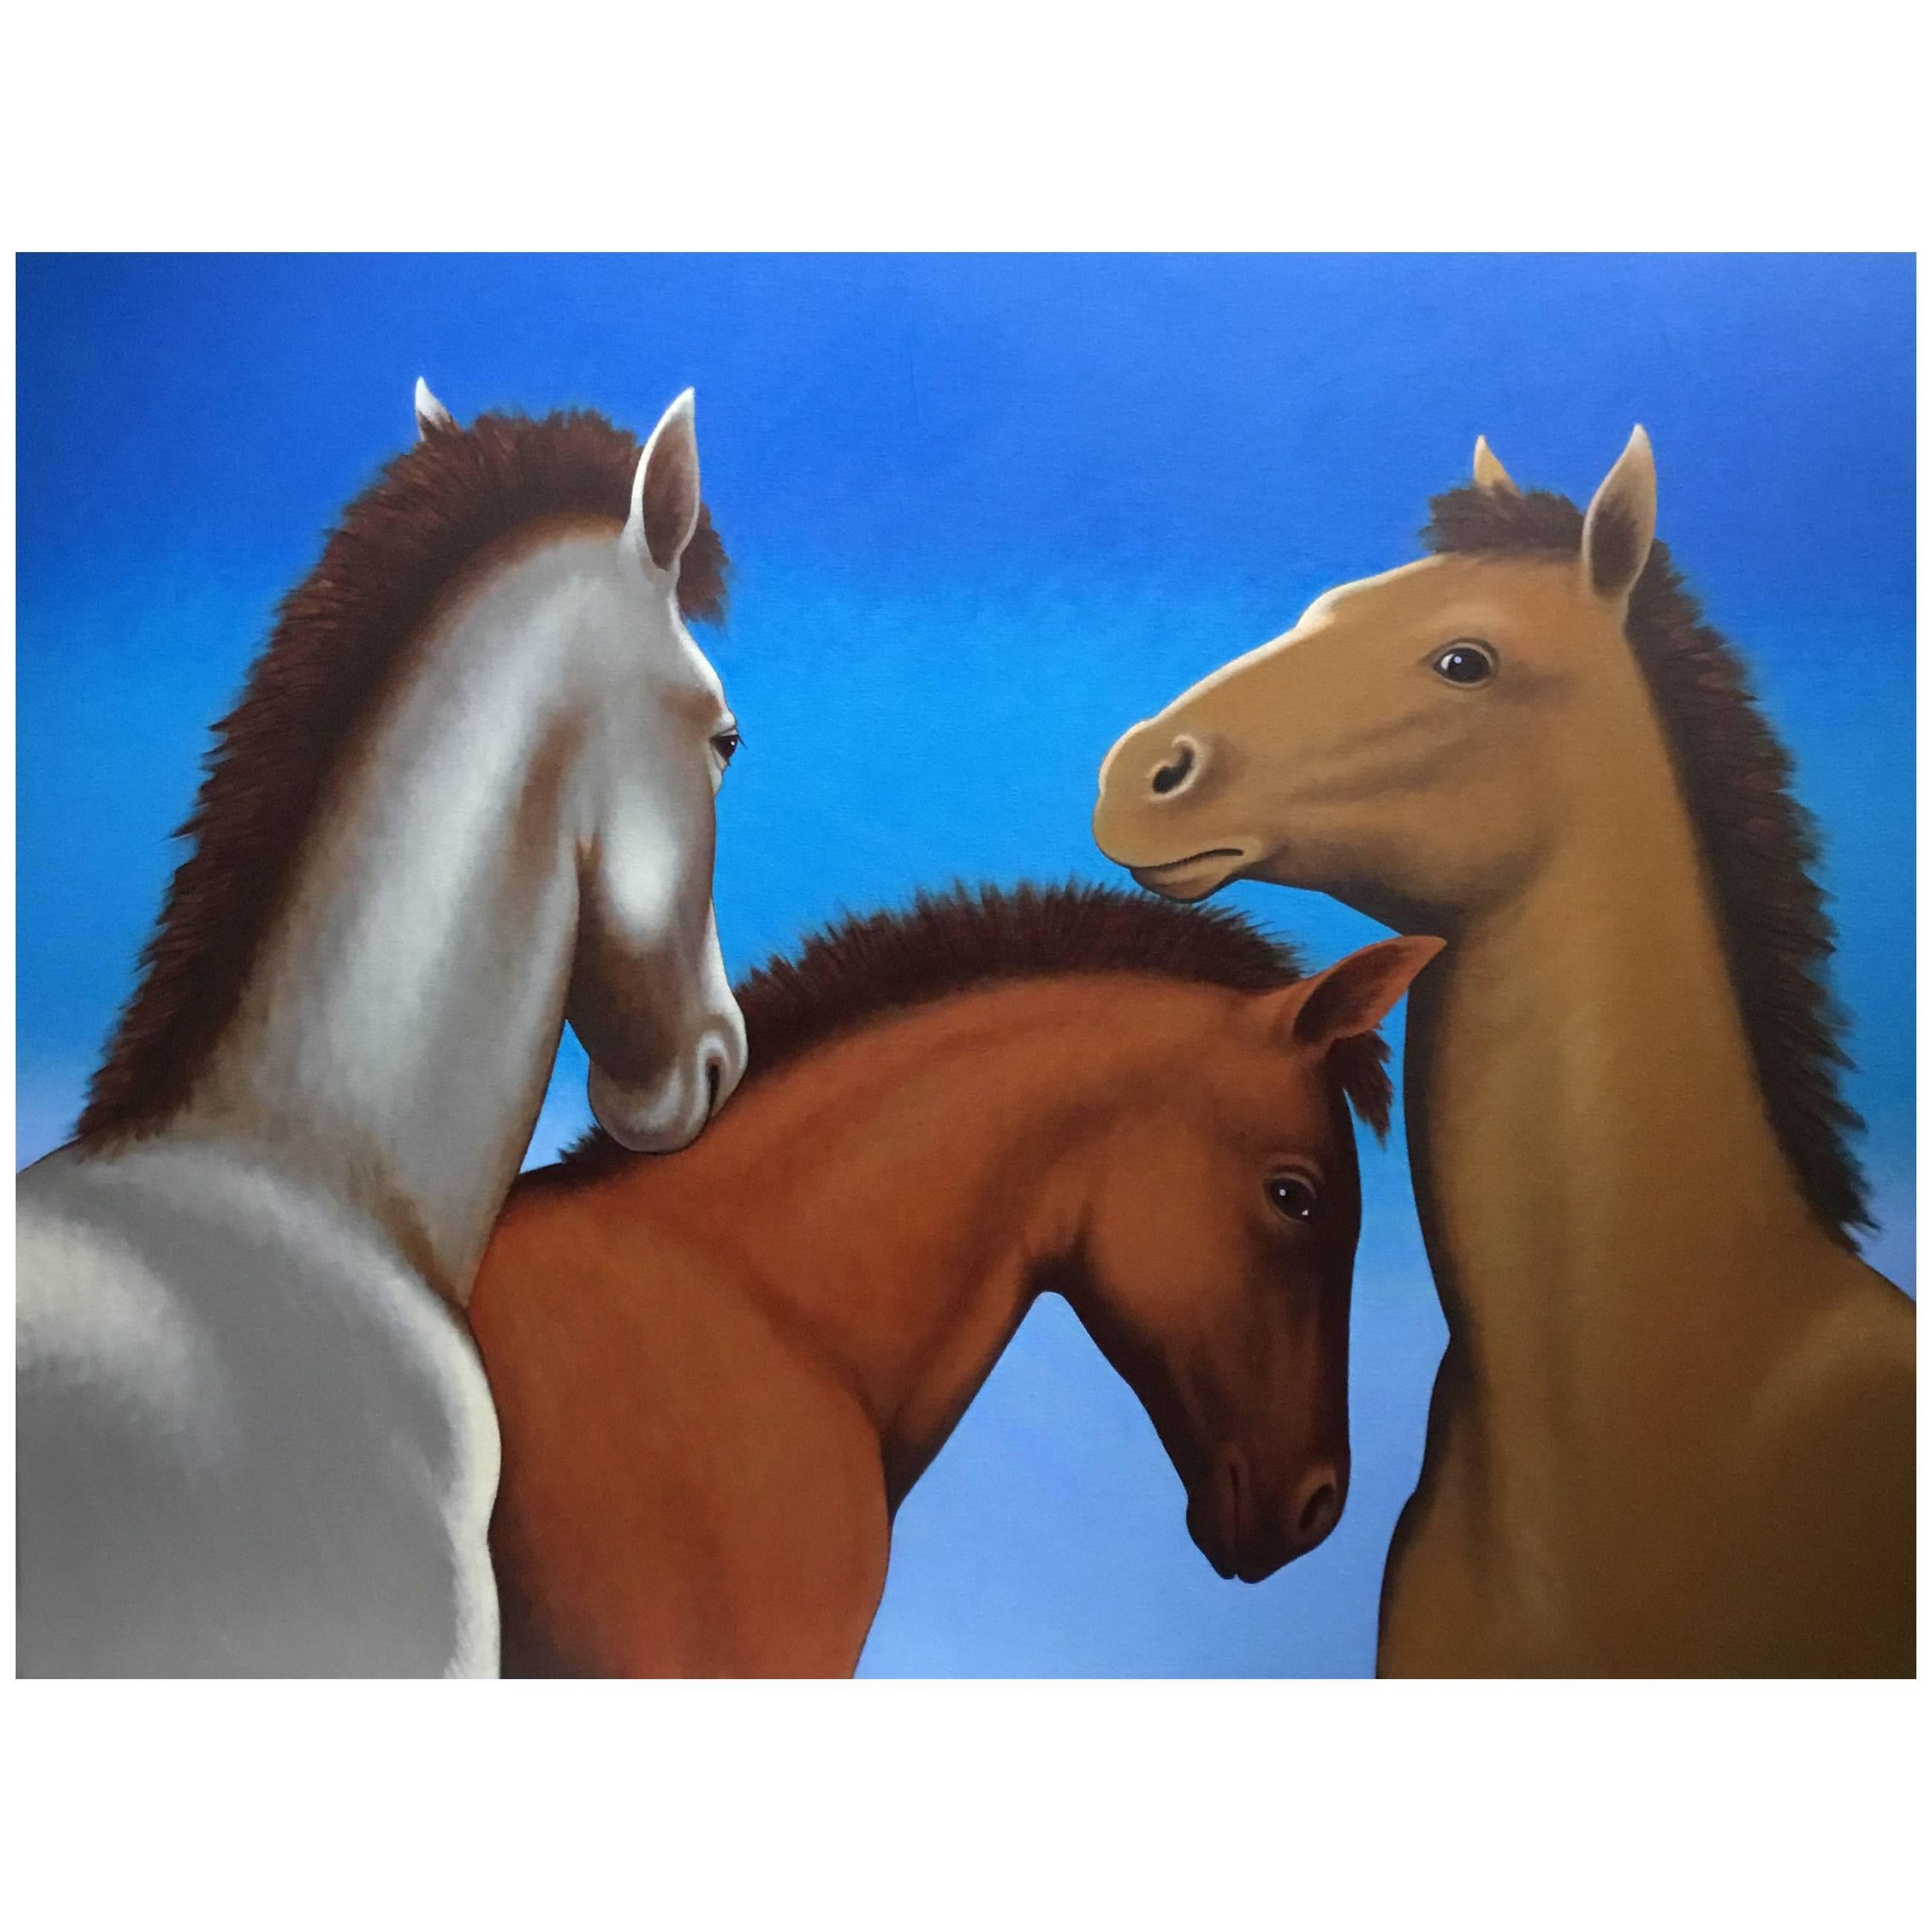 Foals, Gemälde von Lynn Curlee